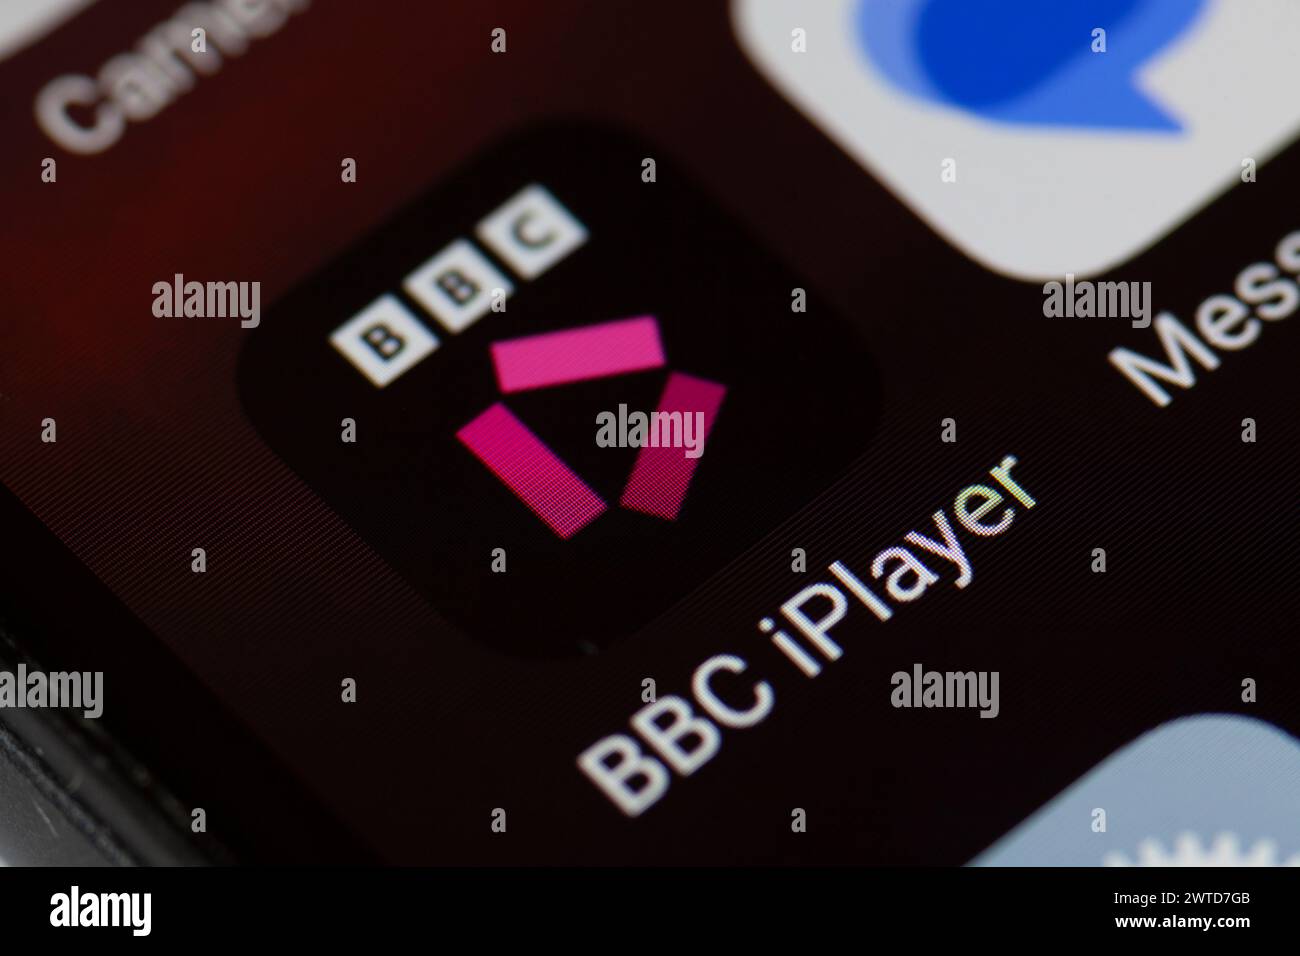 BBC iPlayer app icon on mobile phone Stock Photo